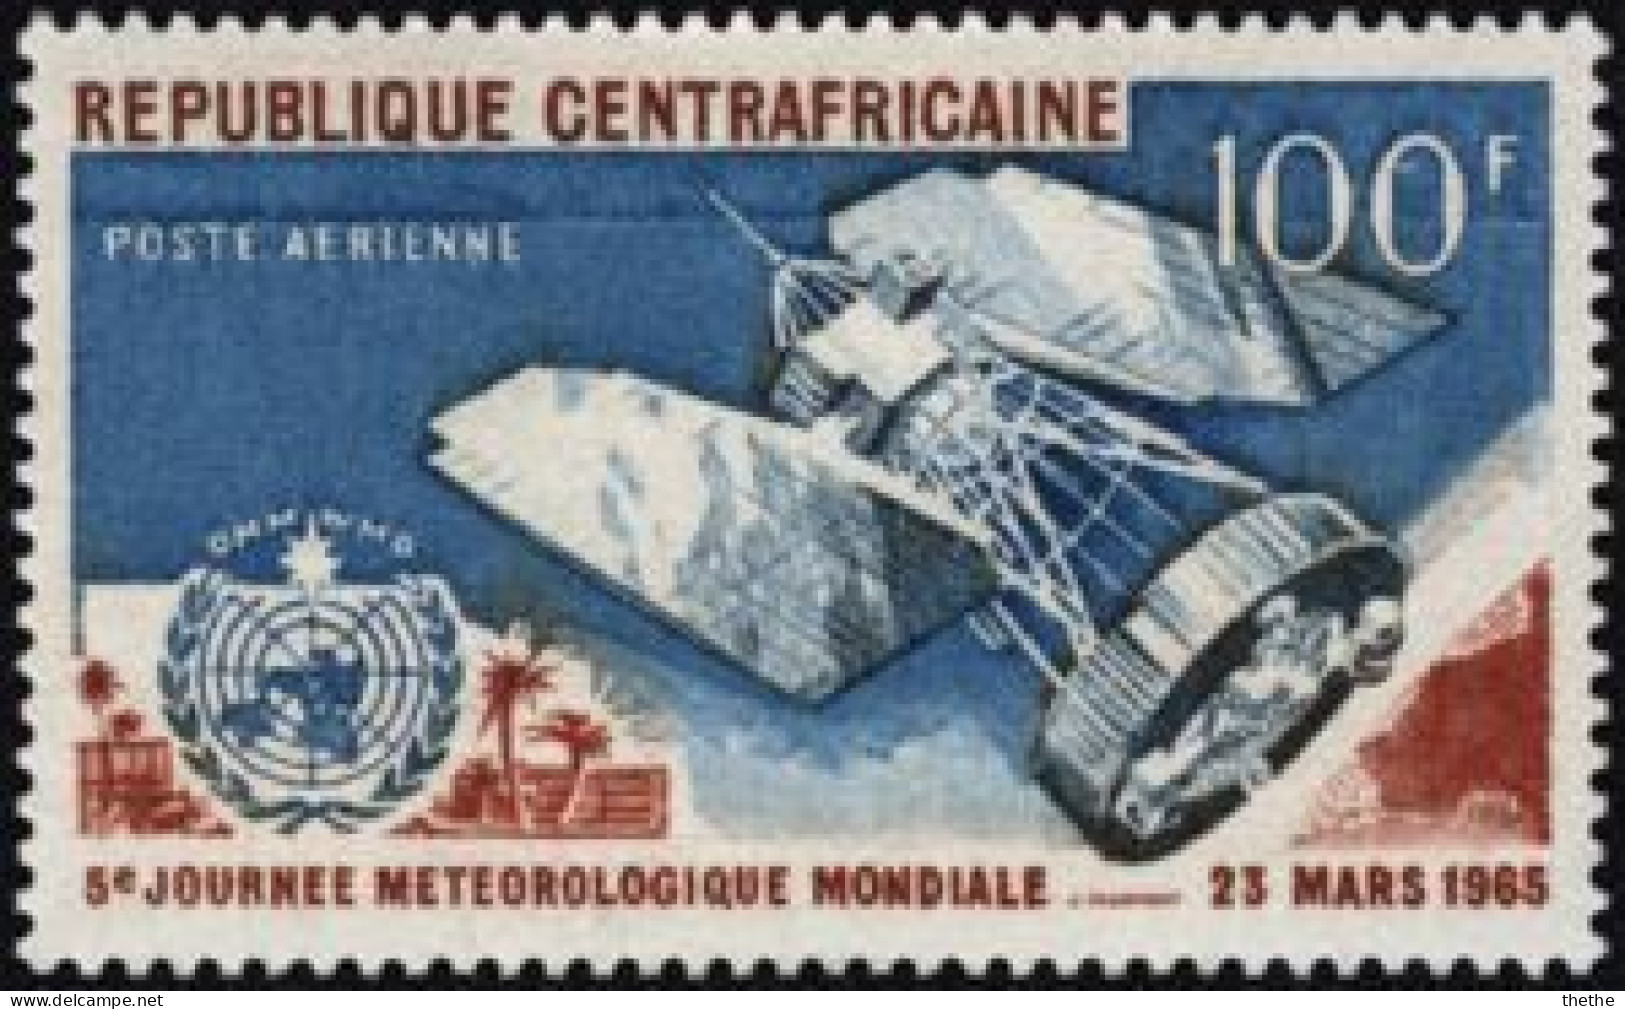 Republique Centrafricaine - 5 ° Journée Météorologique Mondiale - Climate & Meteorology